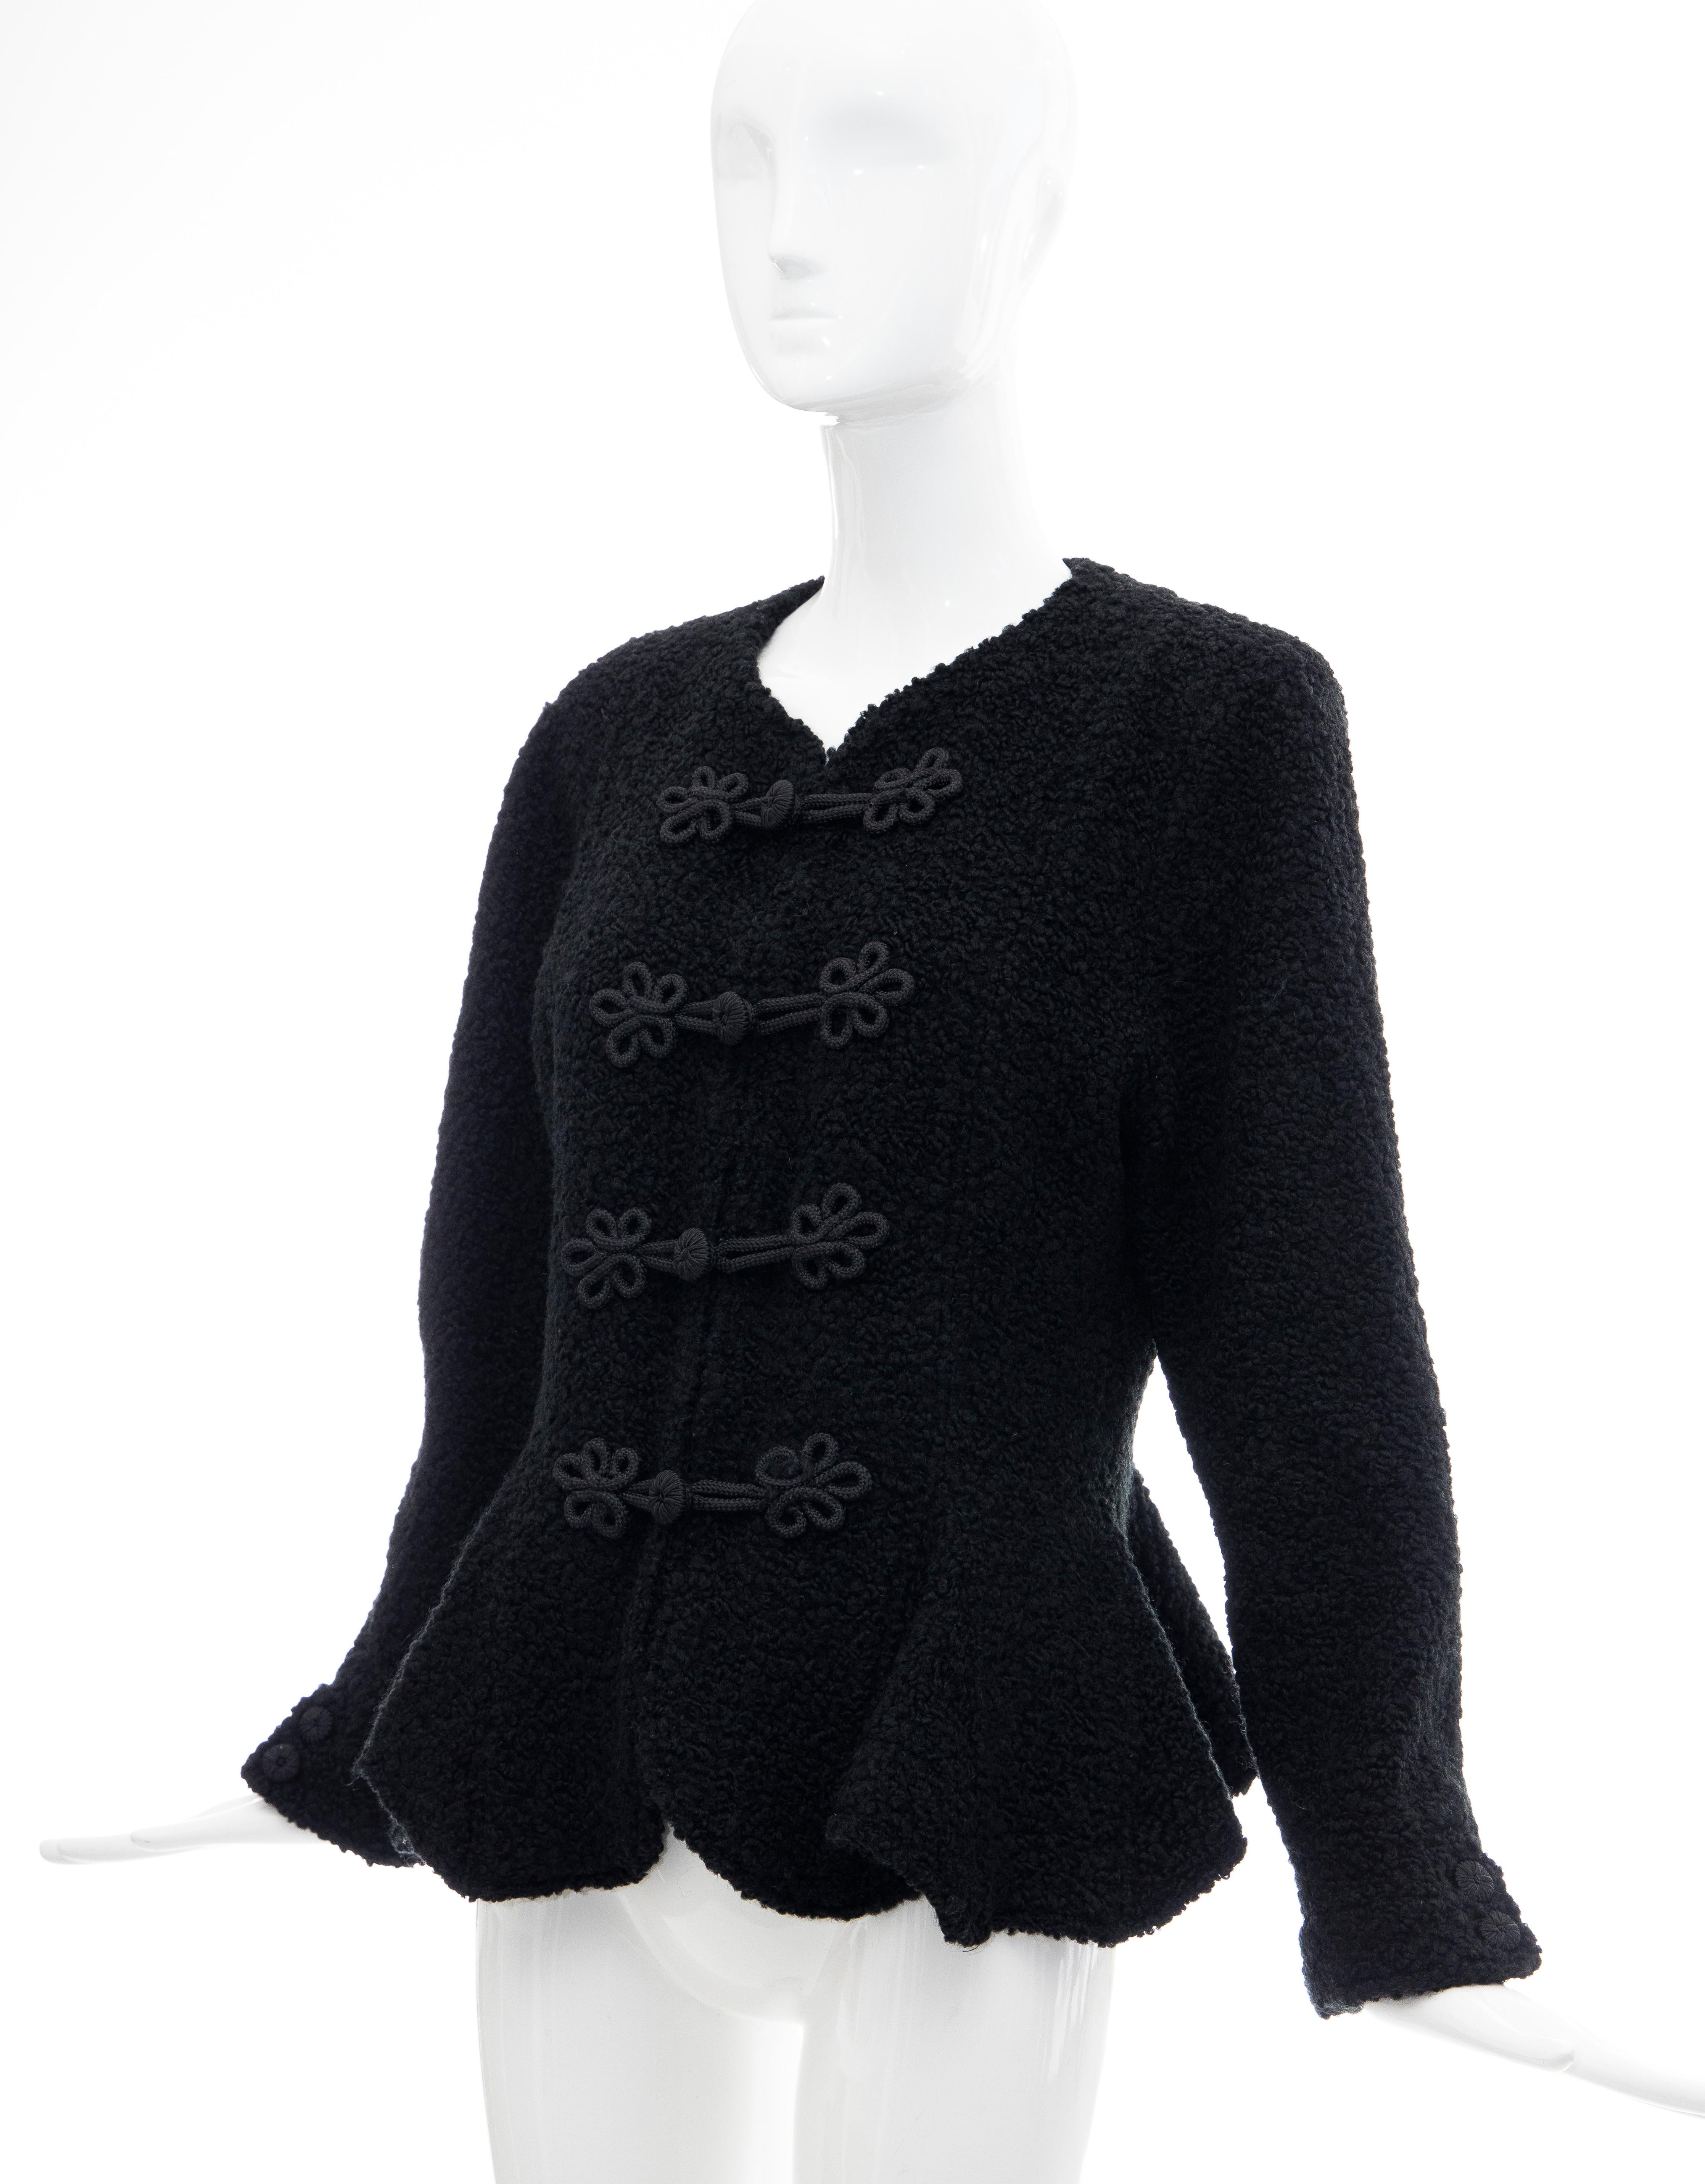 Jean Muir Studio Black Faux Persian Lamb Jacket, Circa: 1980's For Sale 7